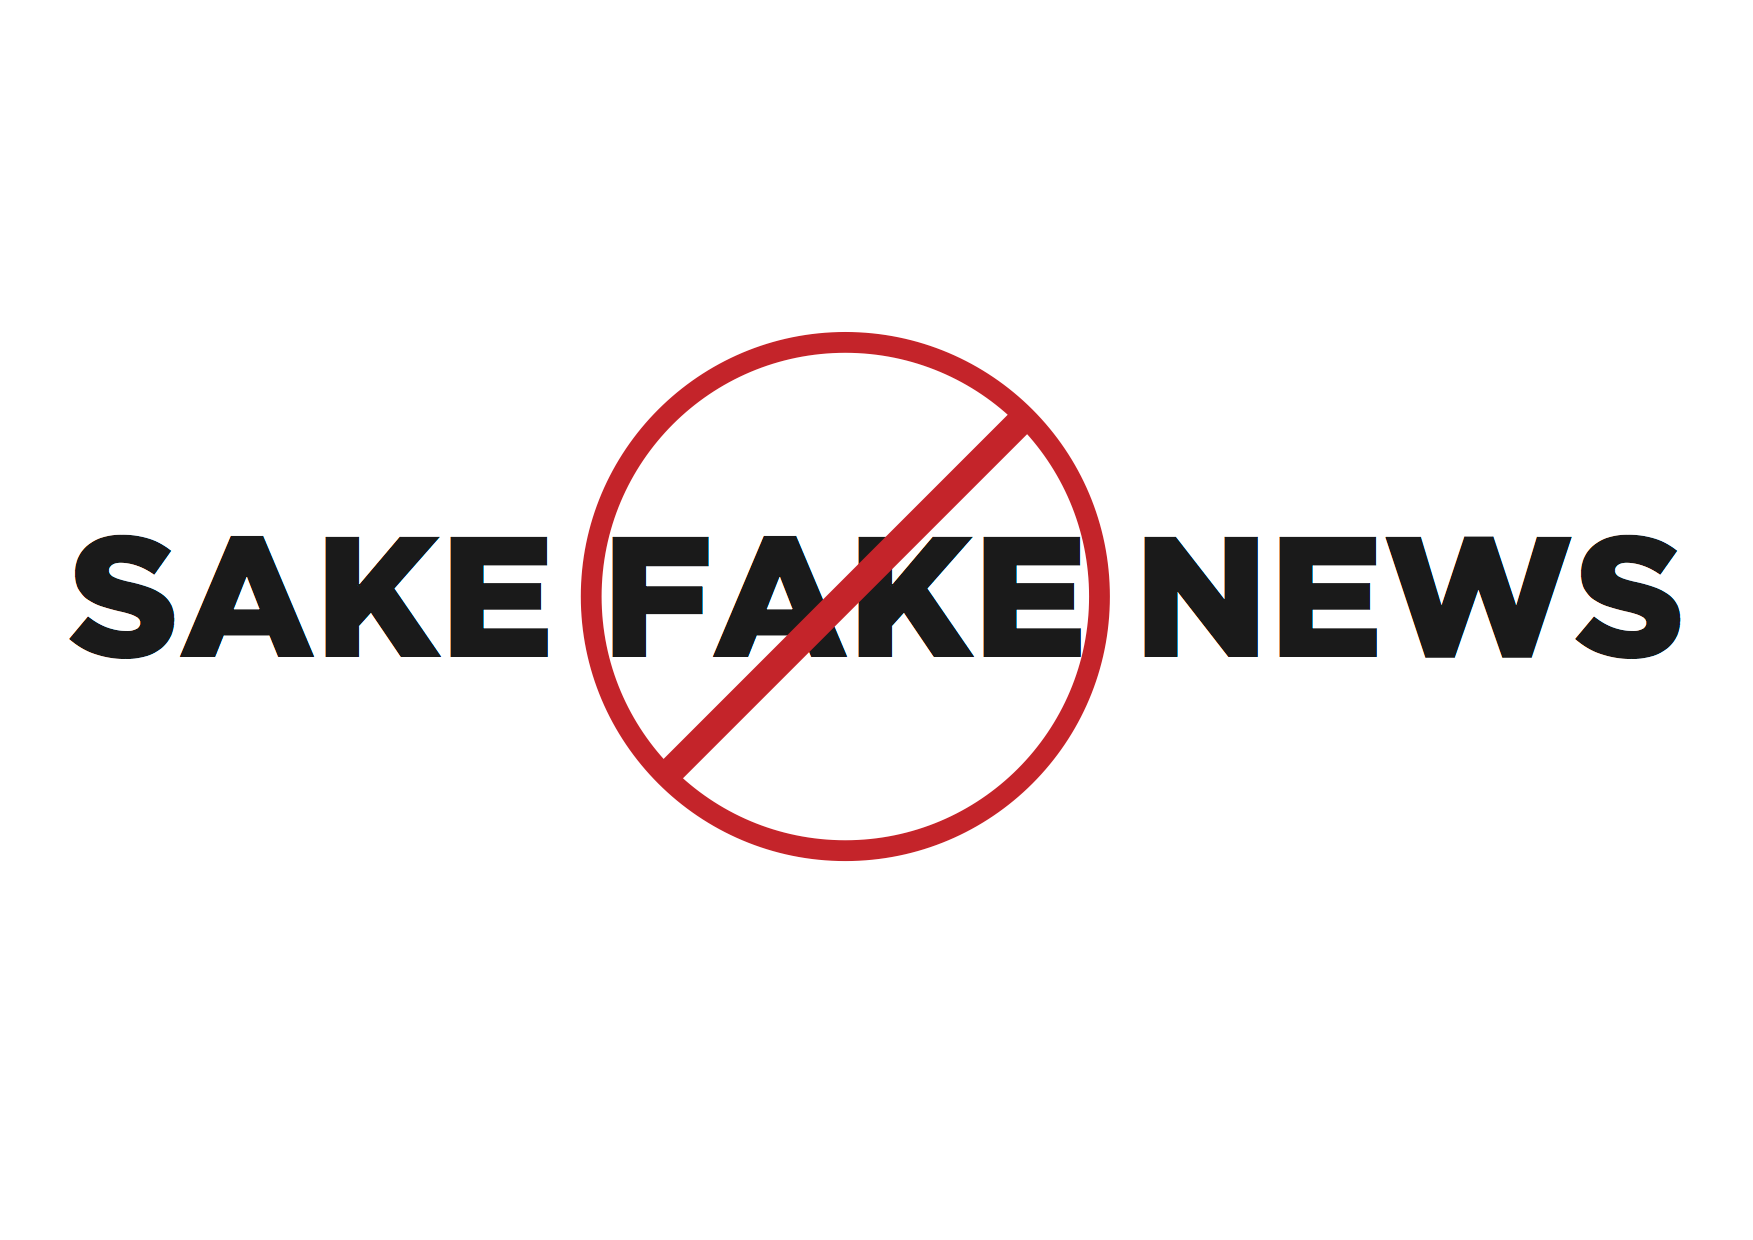 sake fake news